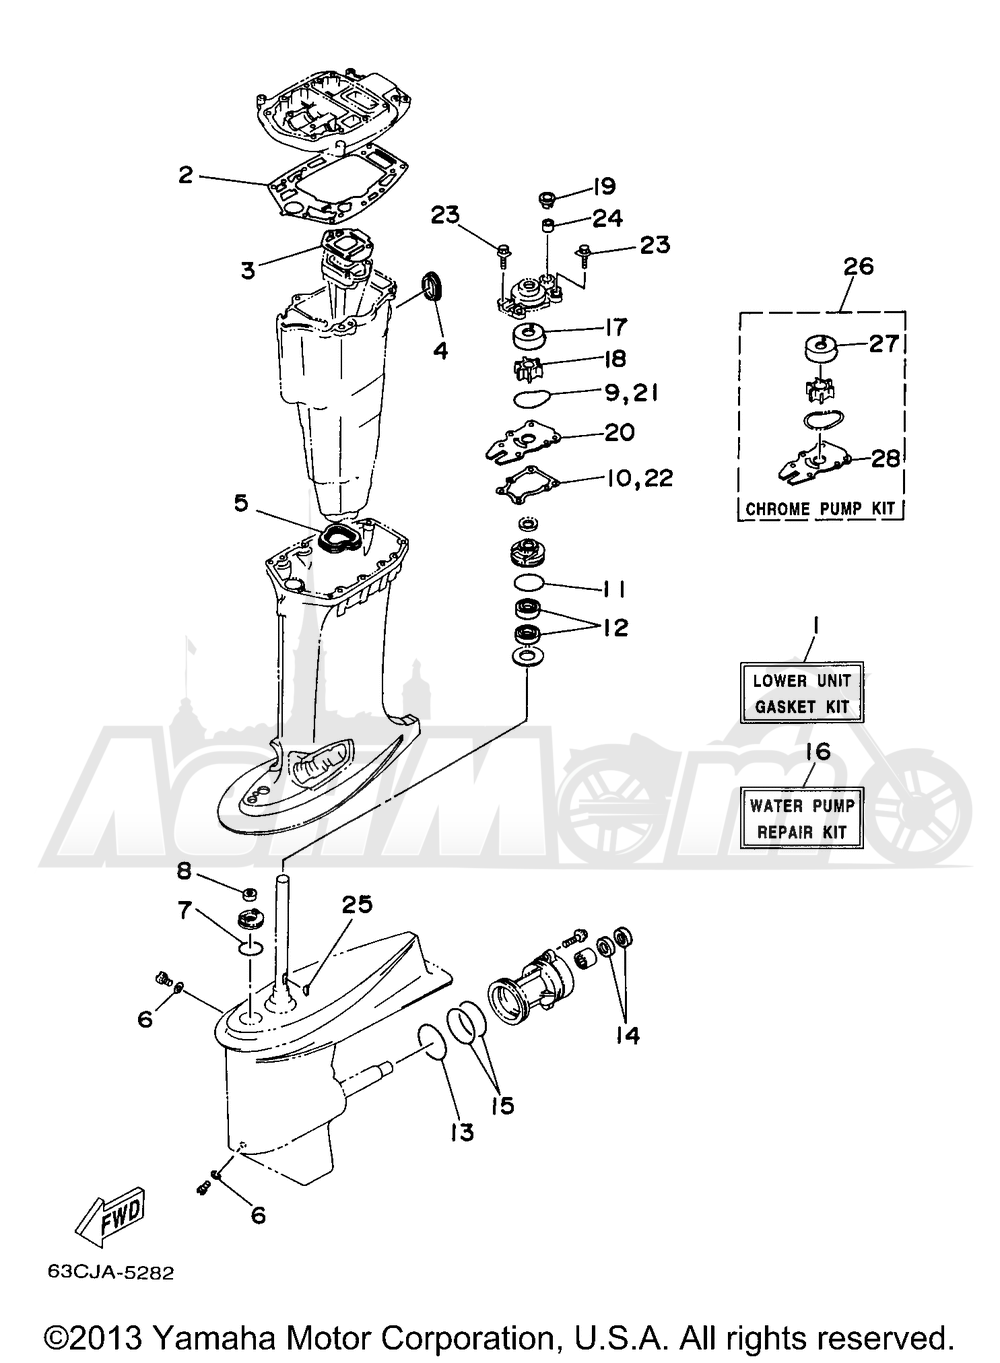 Запчасти для Лодочного мотора Yamaha 1998 C40TLRW Раздел: REPAIR KIT 2 | ремкомплект 2